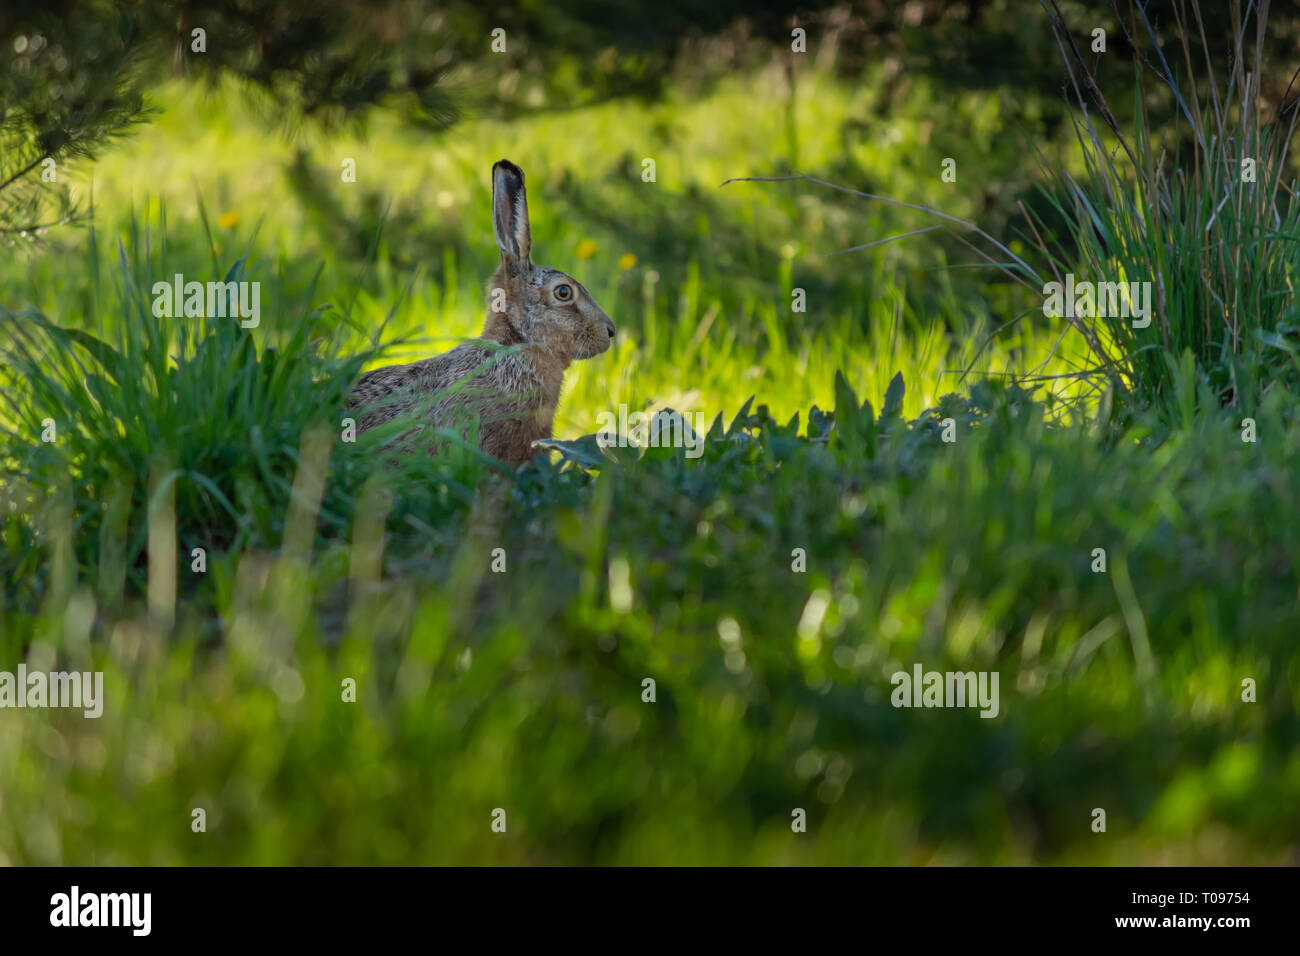 Europäische Wild Mountain hare beobachten und aufmerksam zuhören für preditor Augen im Gras getarnt. Knivsta, Schweden. Stockfoto